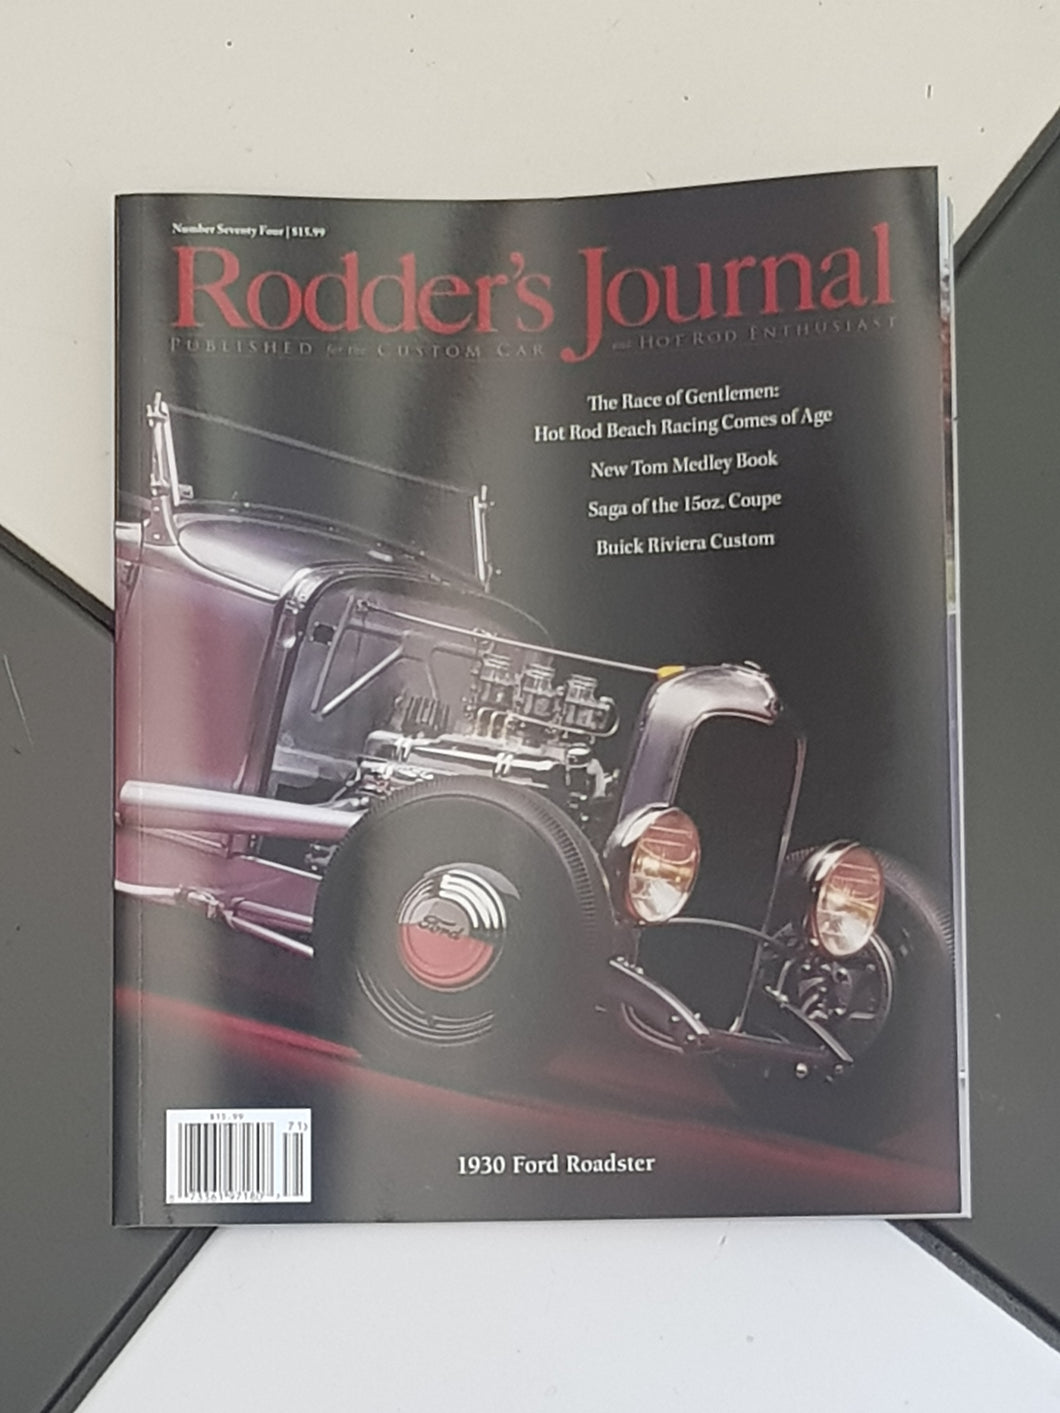 The Rodder's Journal - 74